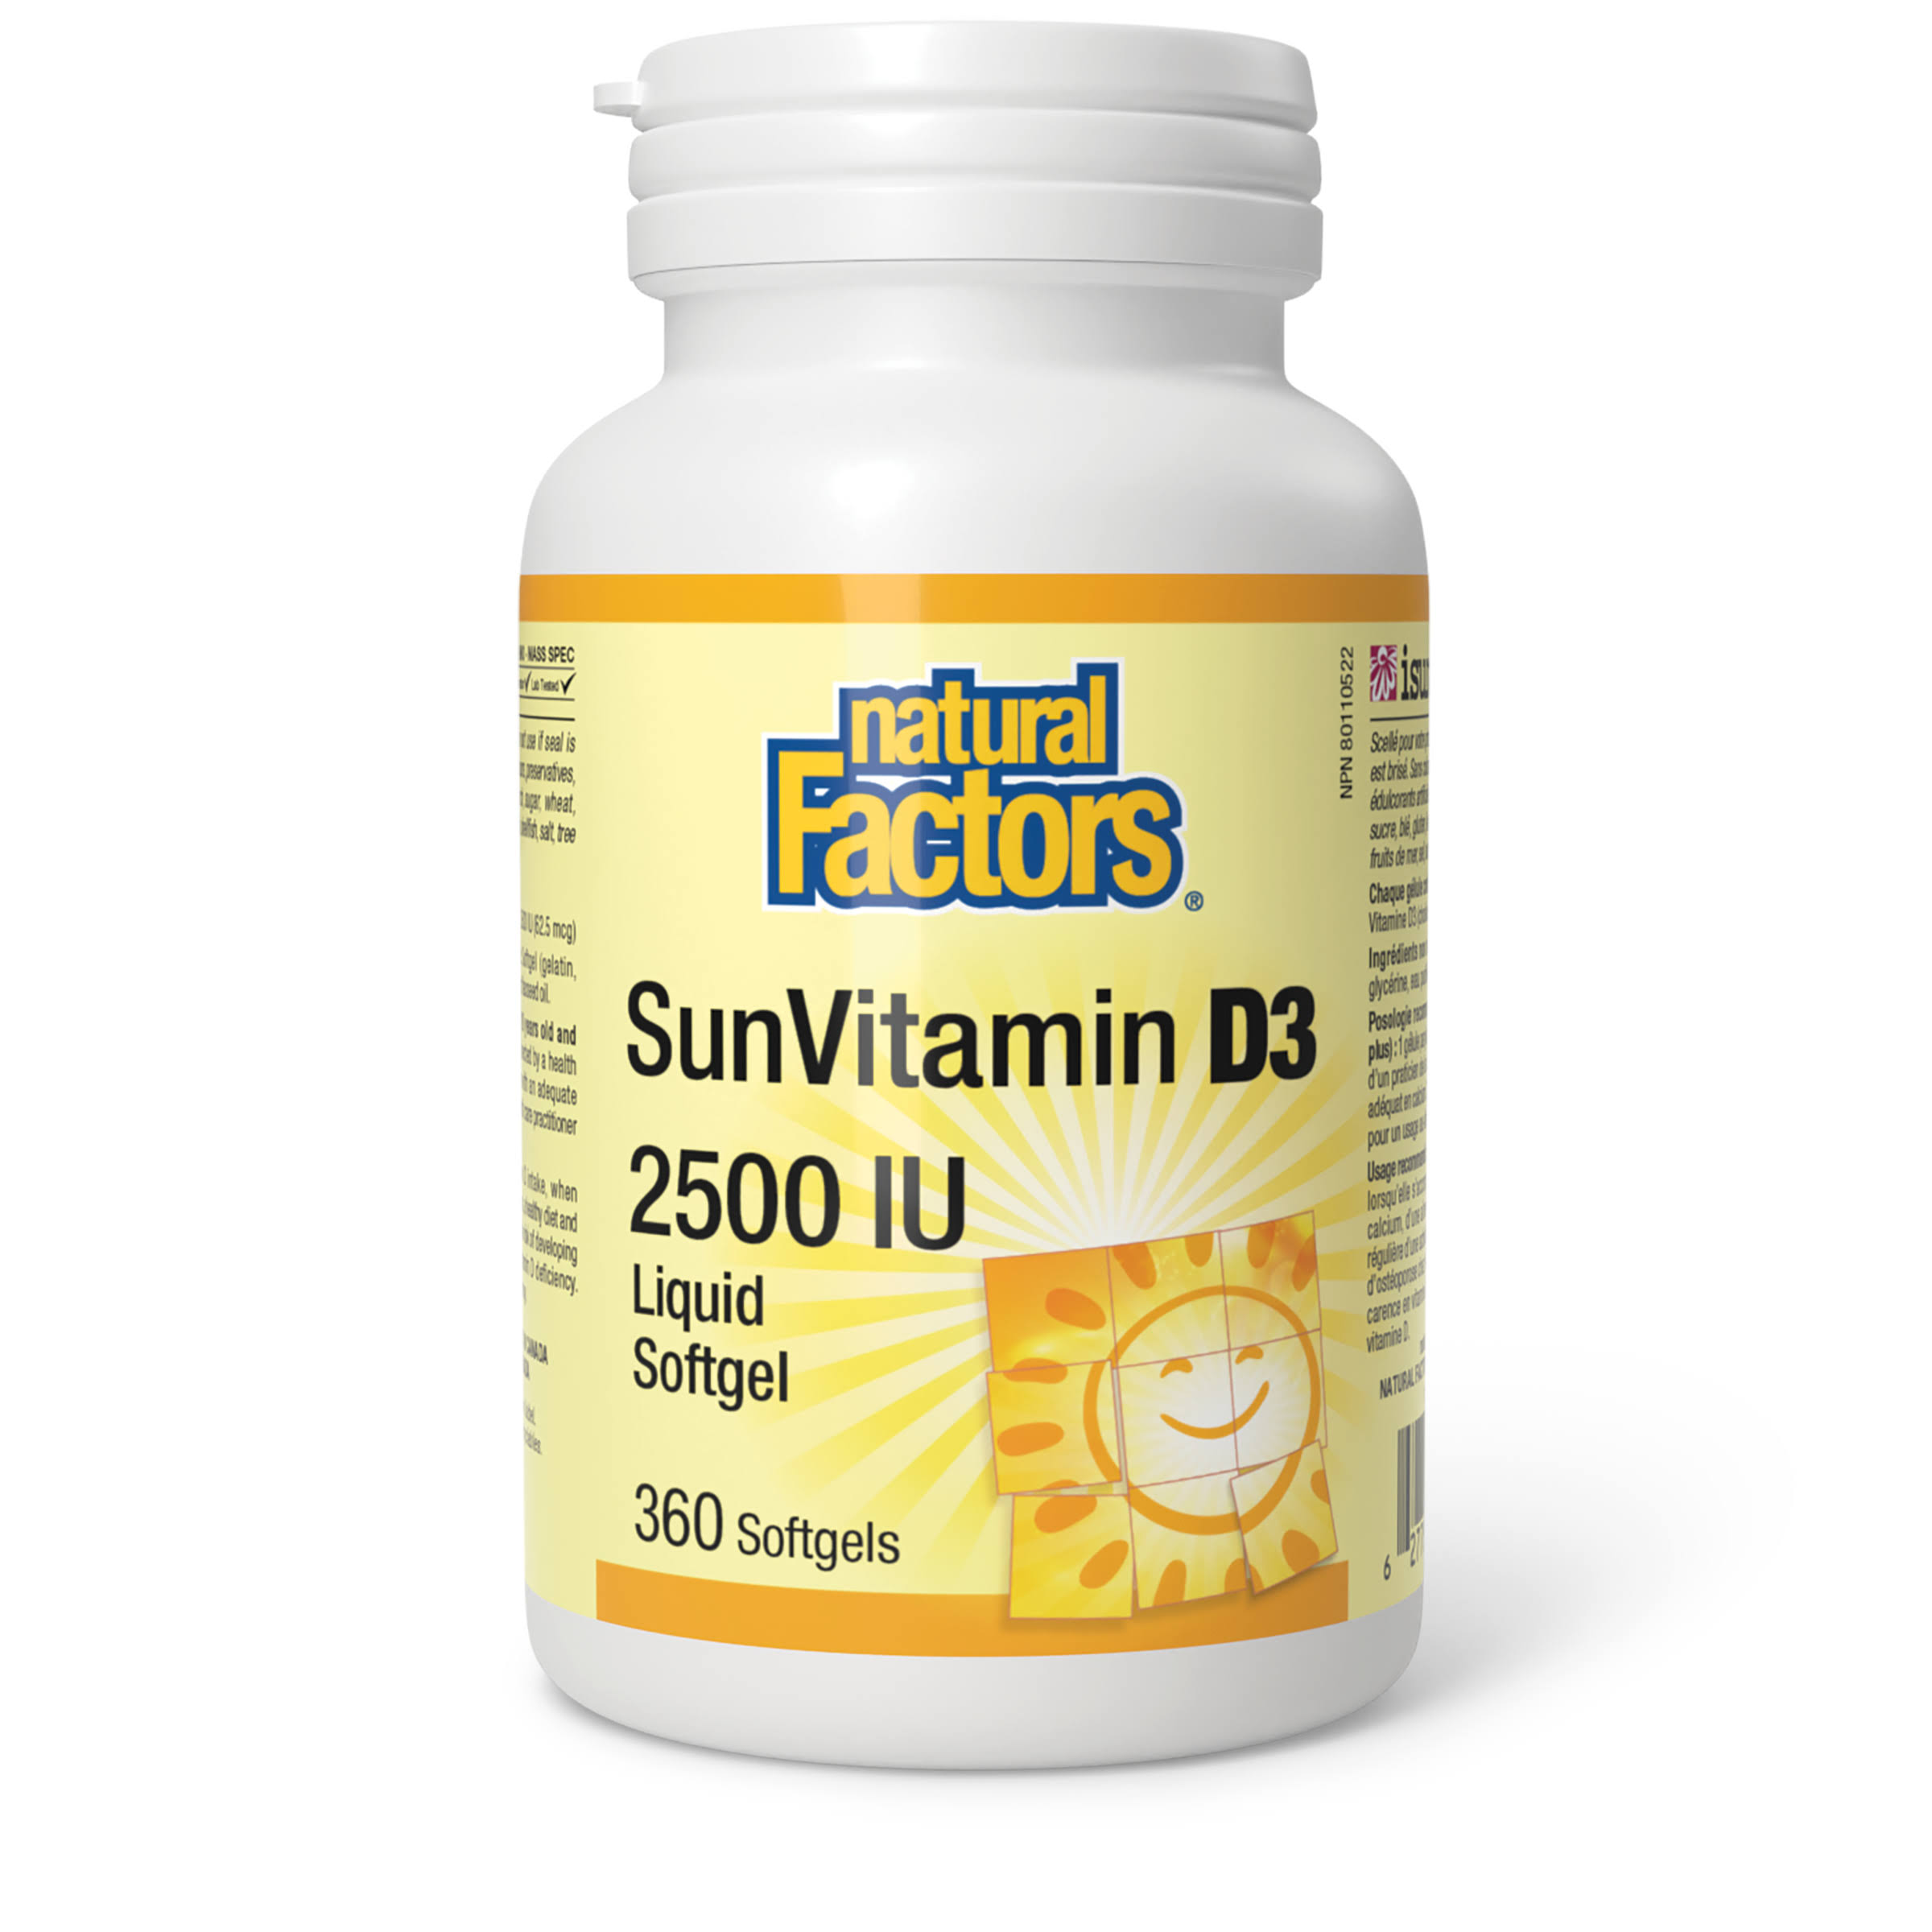 Natural Factors Sunvitamin D3 2500iu 360 Softgels